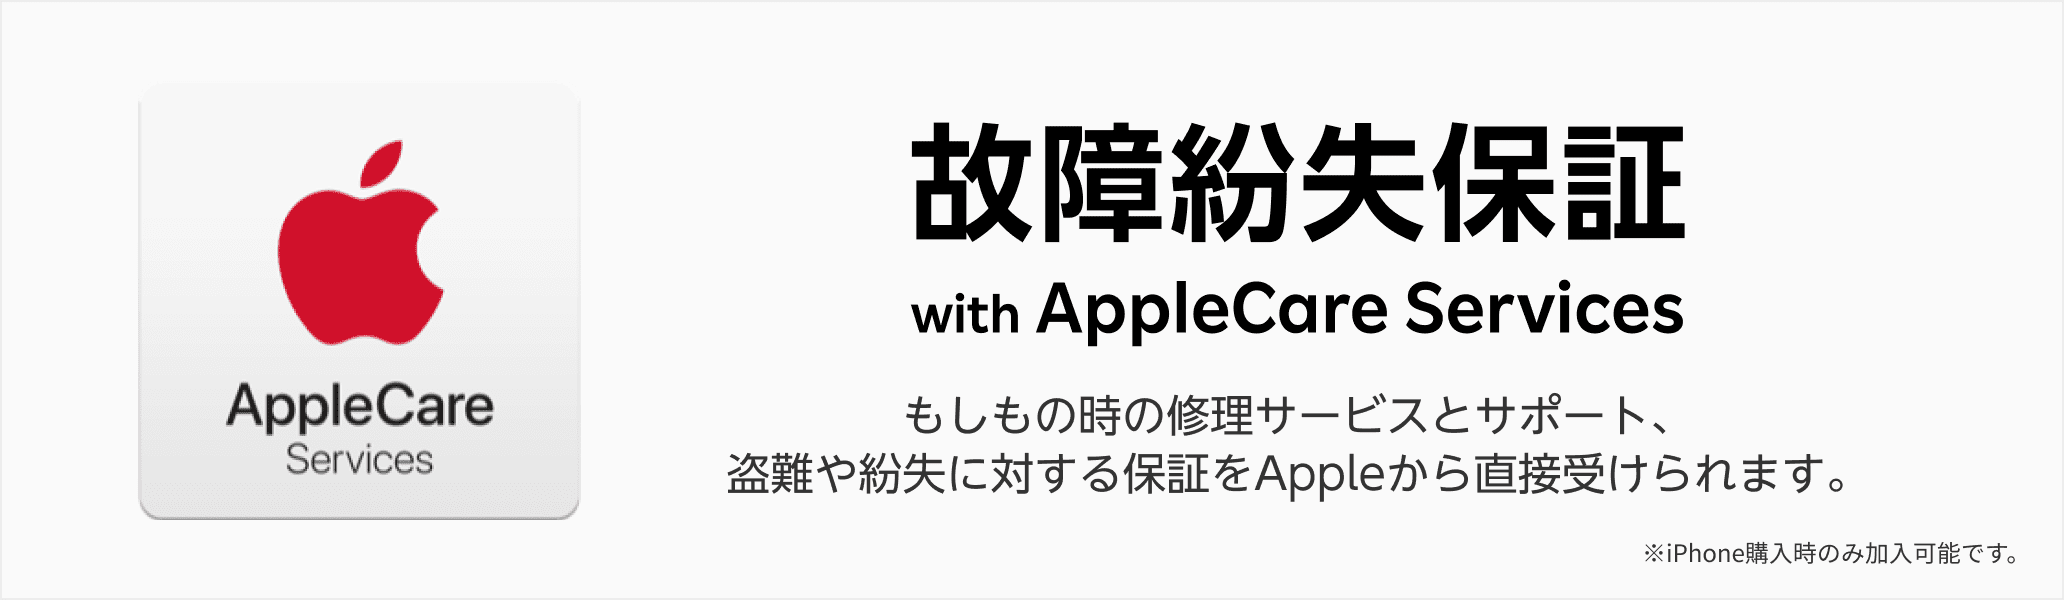 故障紛失保証 with AppleCare Services